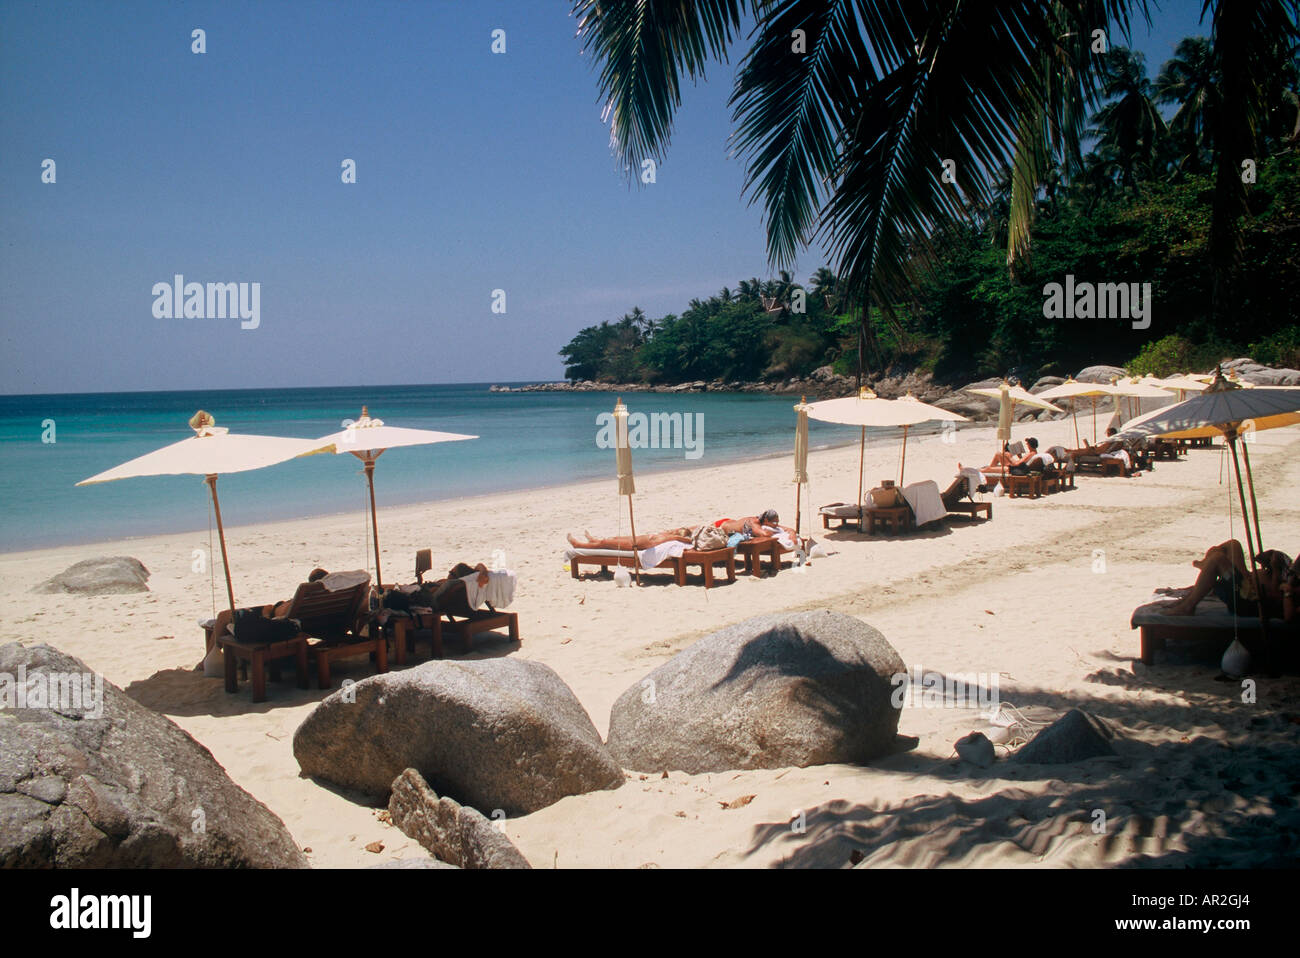 La plage de l'hôtel, l'Amanpuri, Phuket, la mer d'Andaman, Thaïlande Banque D'Images